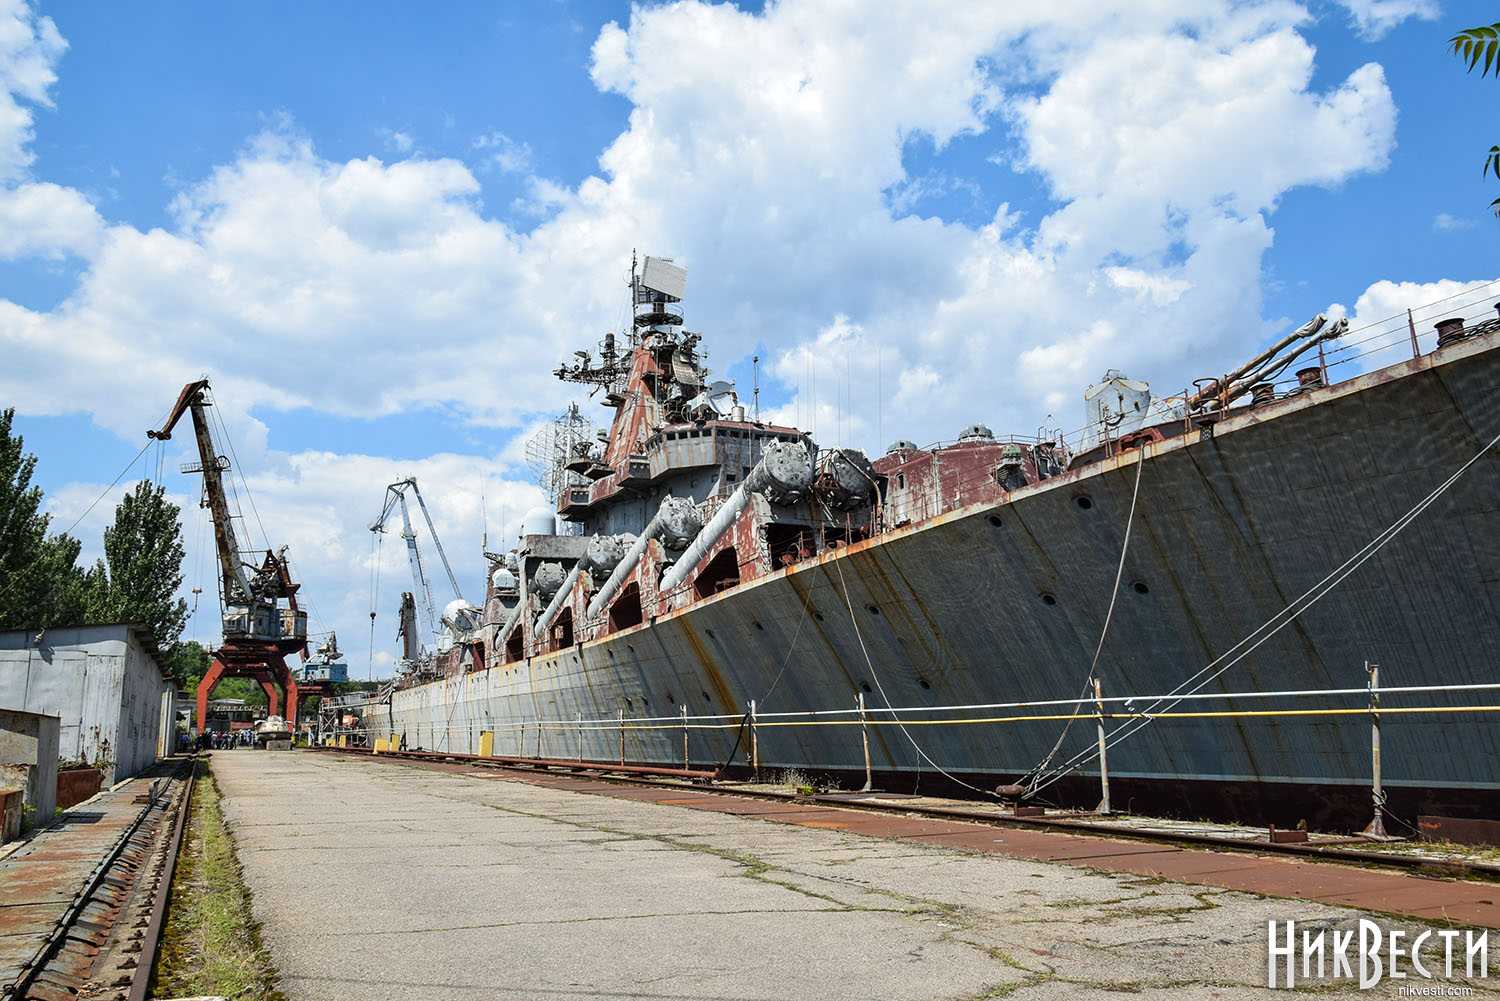 Корпус ракетного крейсера «Украина» у стенки Николаевского завода. Июль 2019 г.